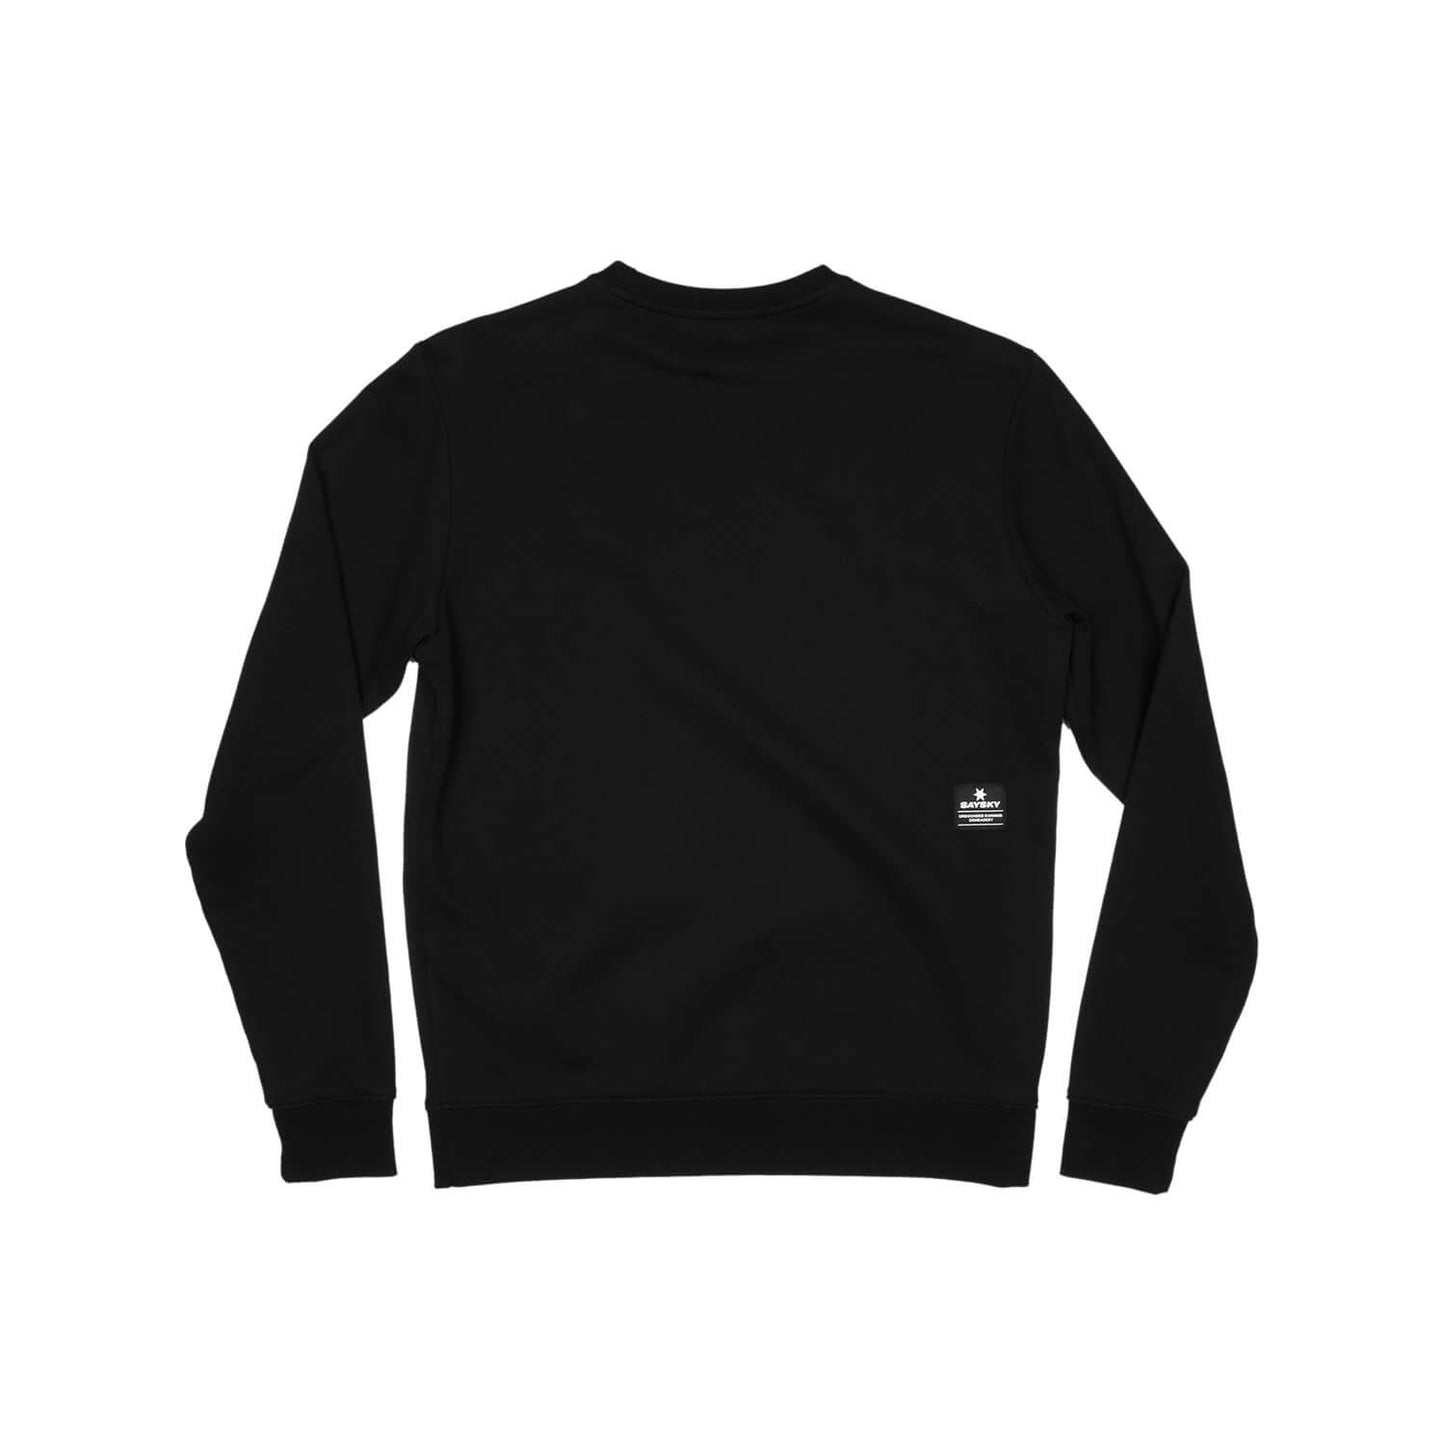 スウェット FMLSW01 Classic Lifestyle Sweatshirt - Black [ユニセックス]